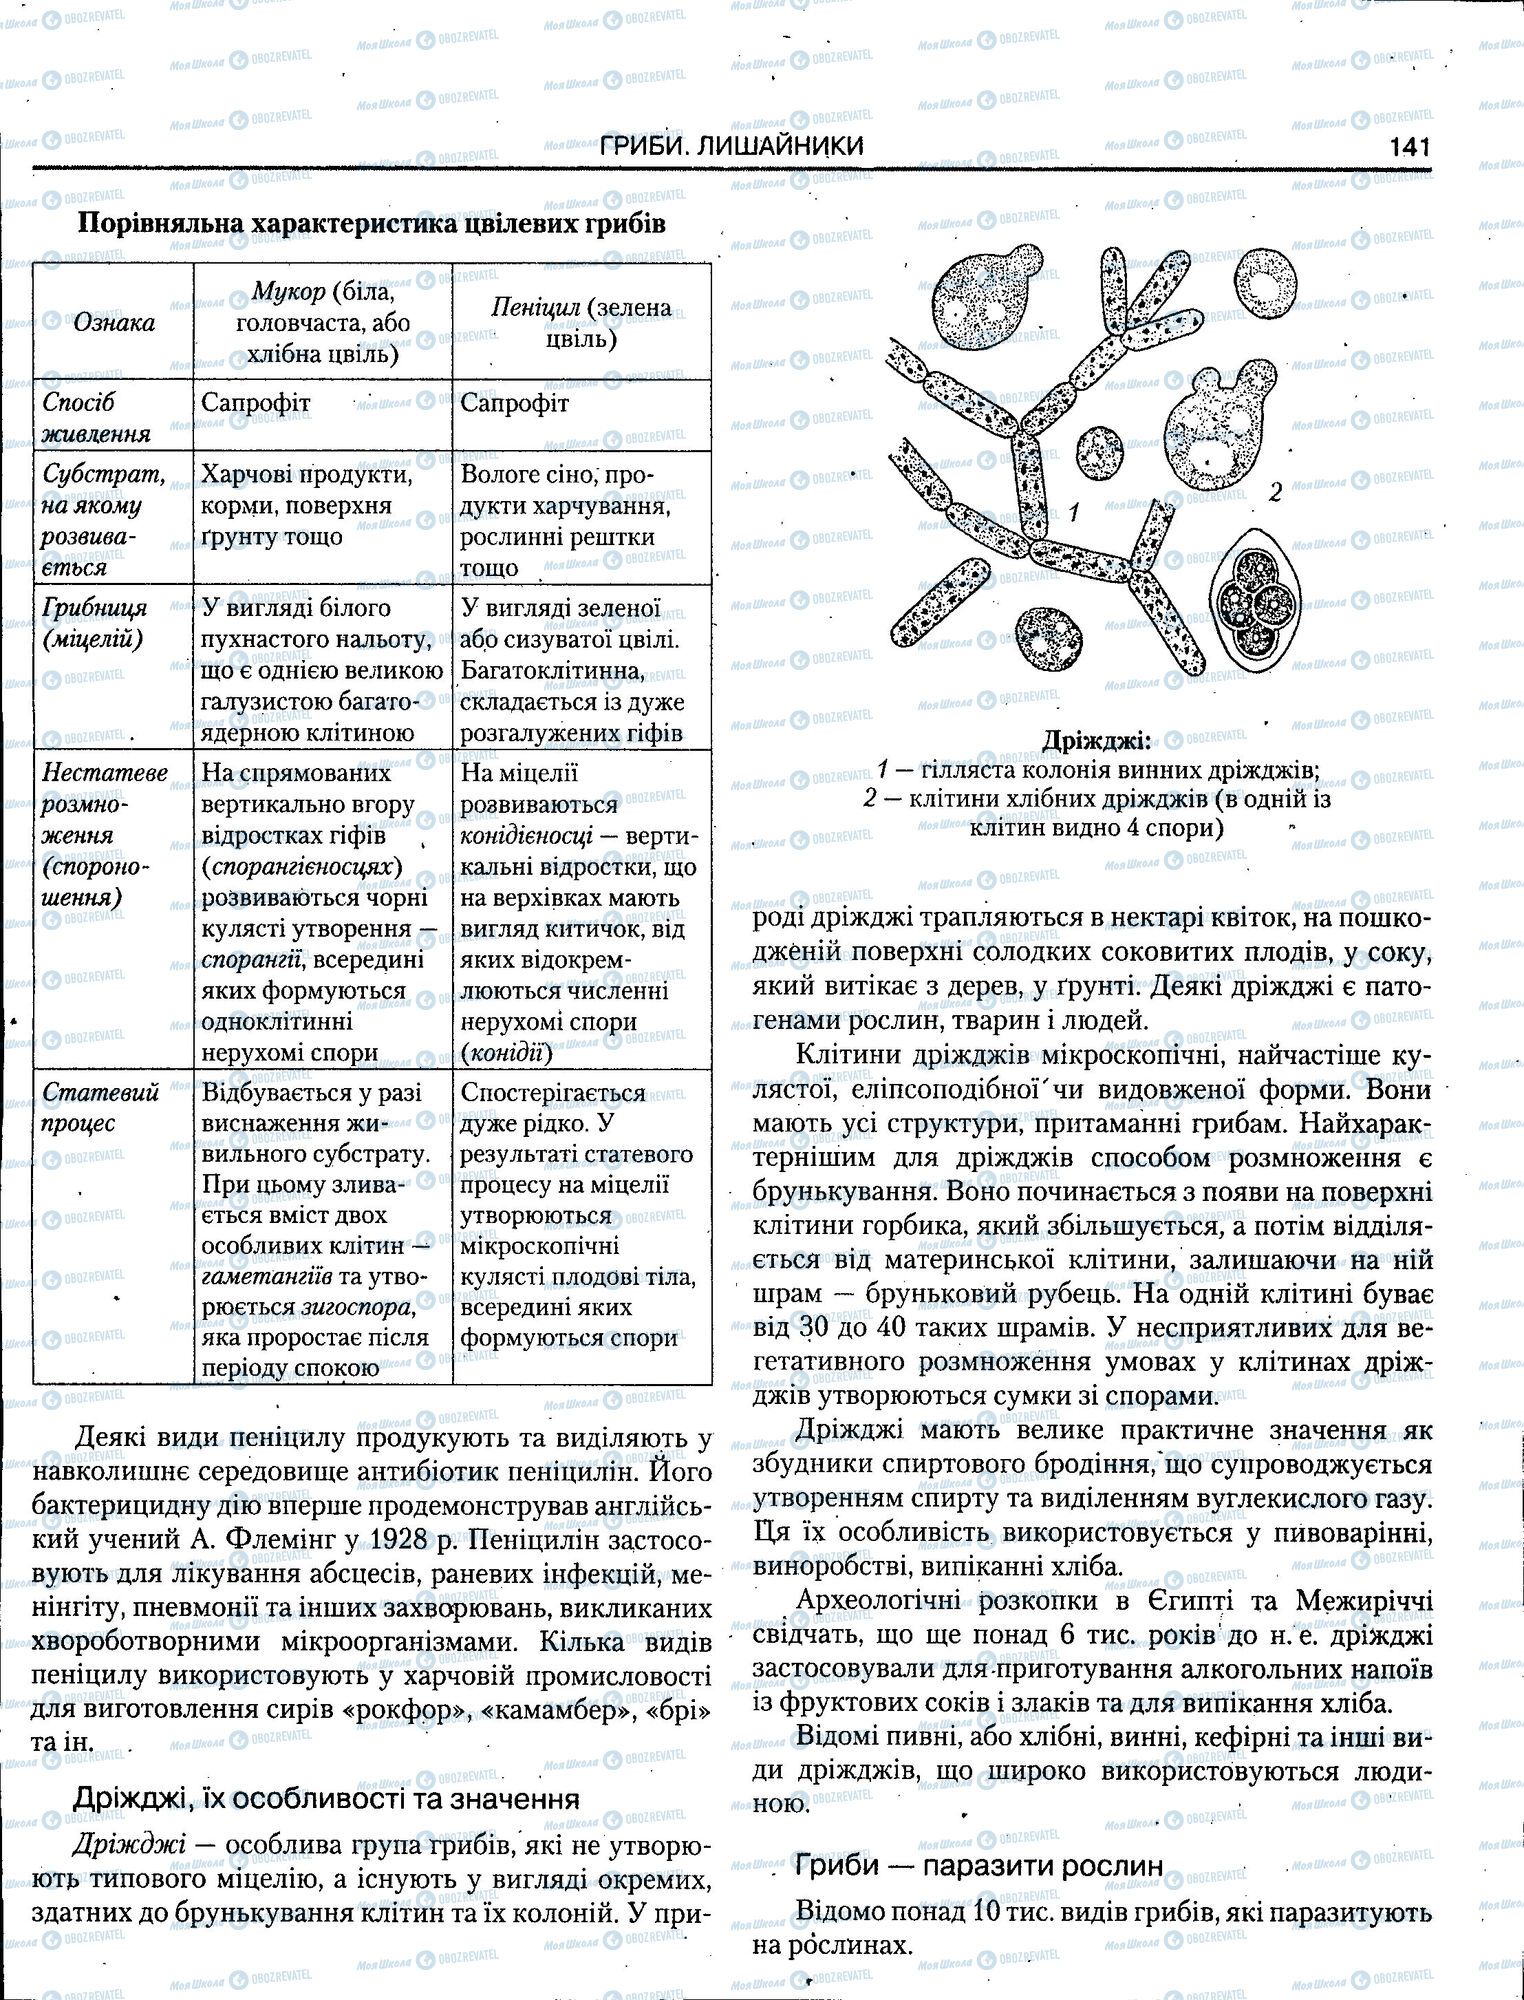 ЗНО Биология 11 класс страница 141